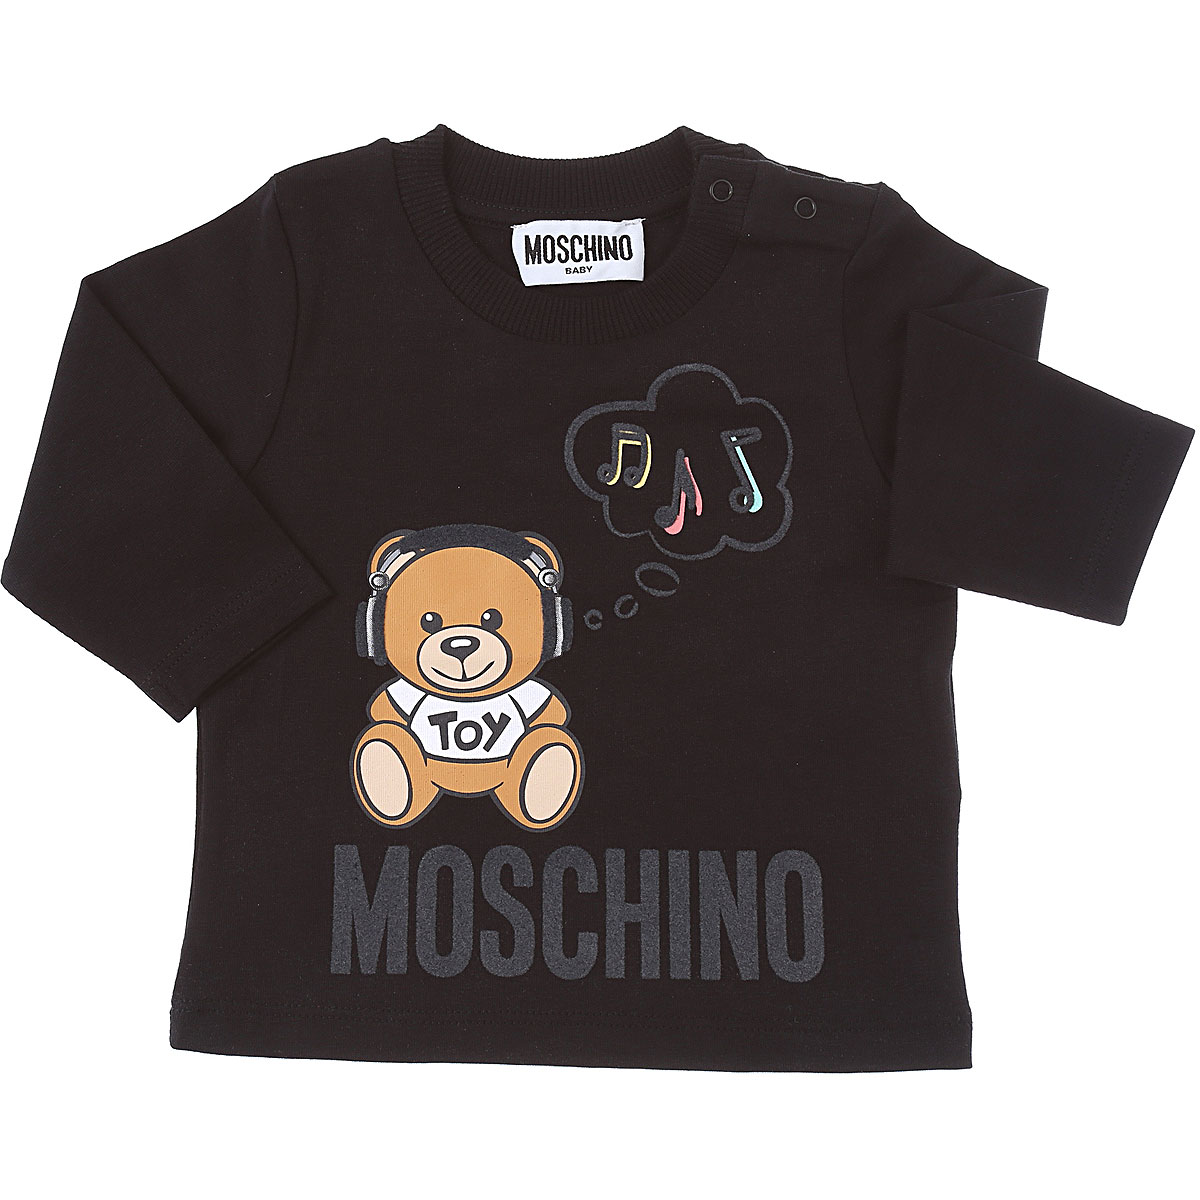 Moschino Baby T-Shirt für Jungen Günstig im Sale, Schwarz, Baumwolle, 2017, 18M 24M 2Y 3Y 6M 9M